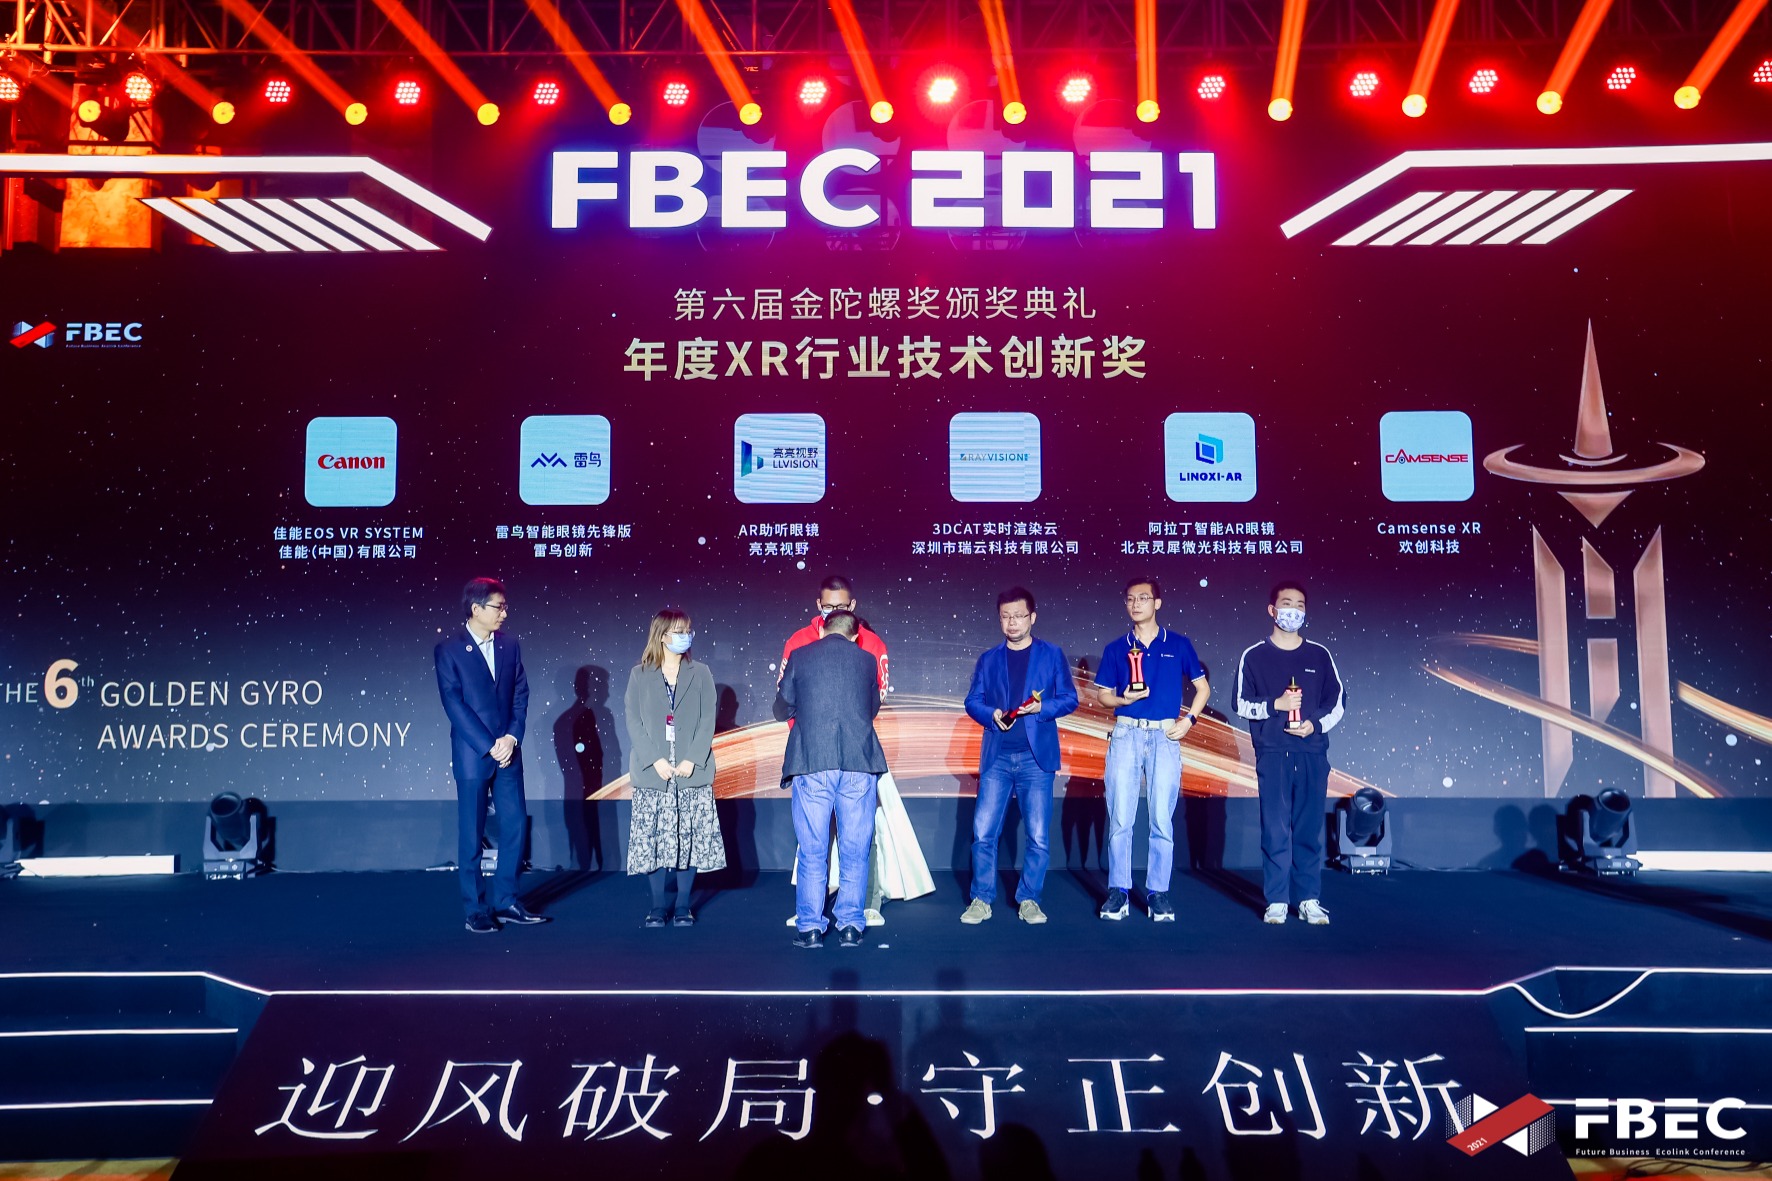 【FBEC2021】佳能（中国）有限公司“佳能EOS VR系统”荣获第六届金陀螺奖“年度XR行业技术创新奖”